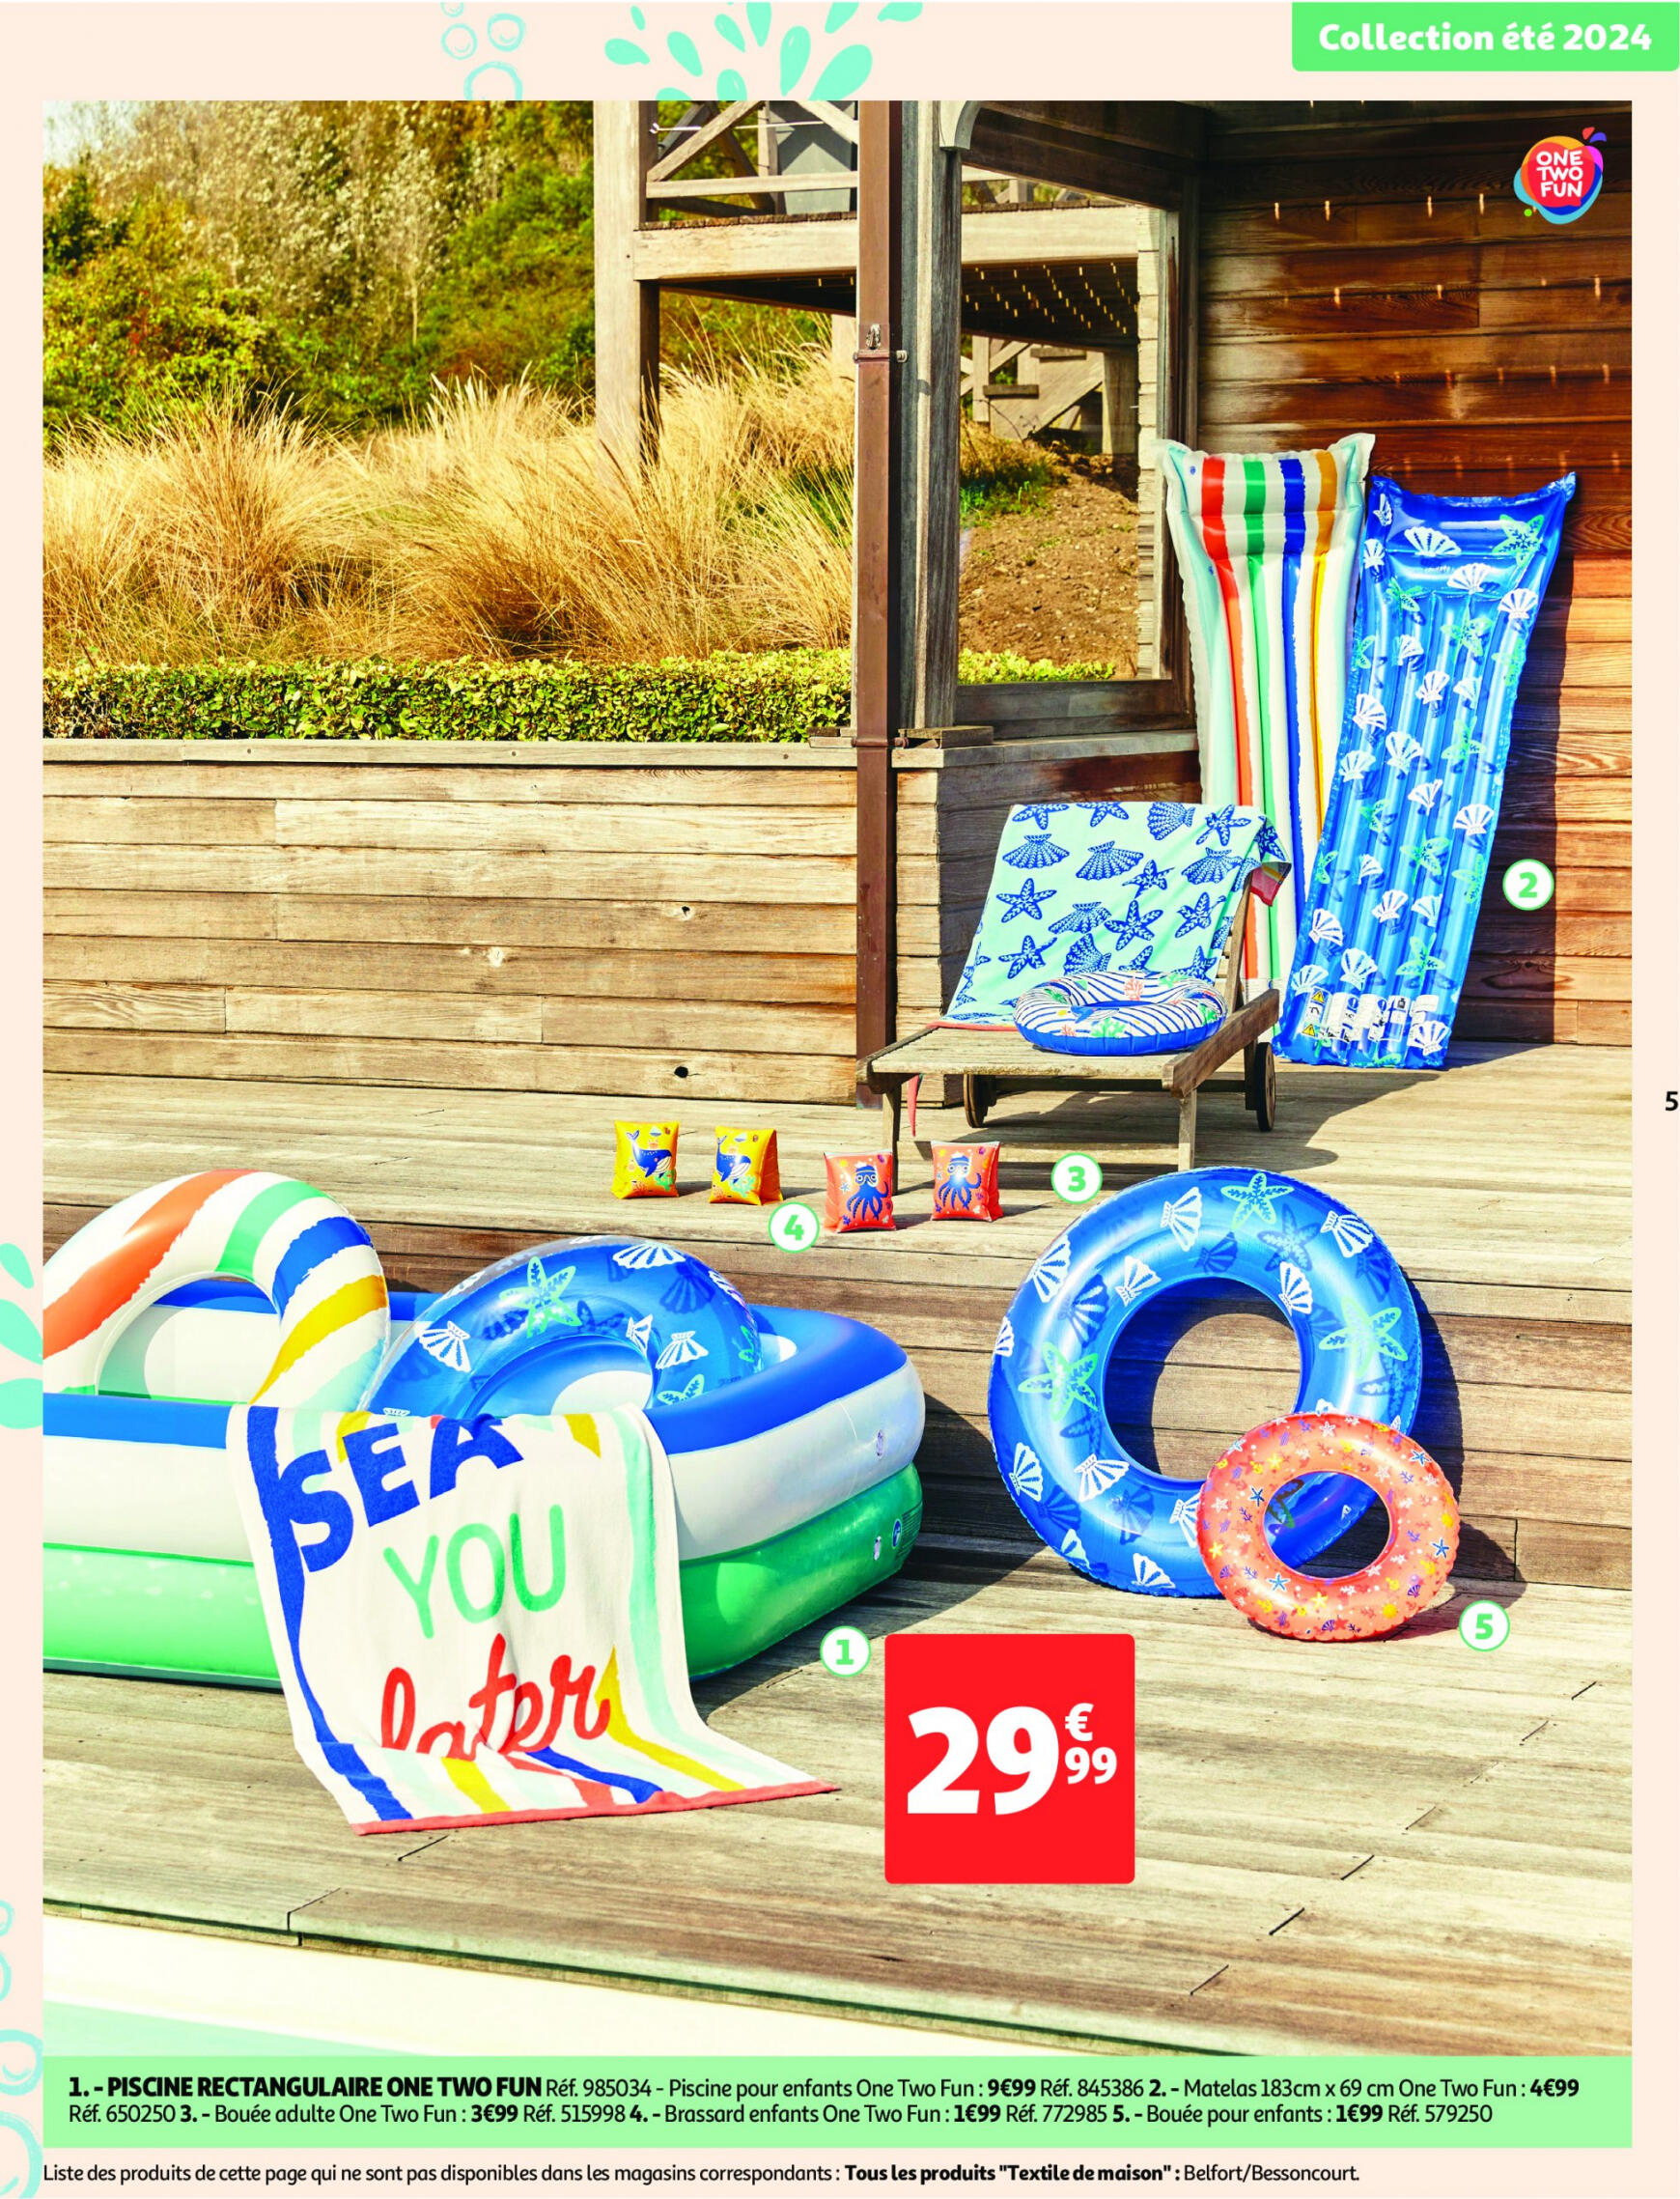 auchan - Auchan - Nos exclusivités Summer pour s'amuser tout l'été folder huidig 14.05. - 15.06. - page: 5